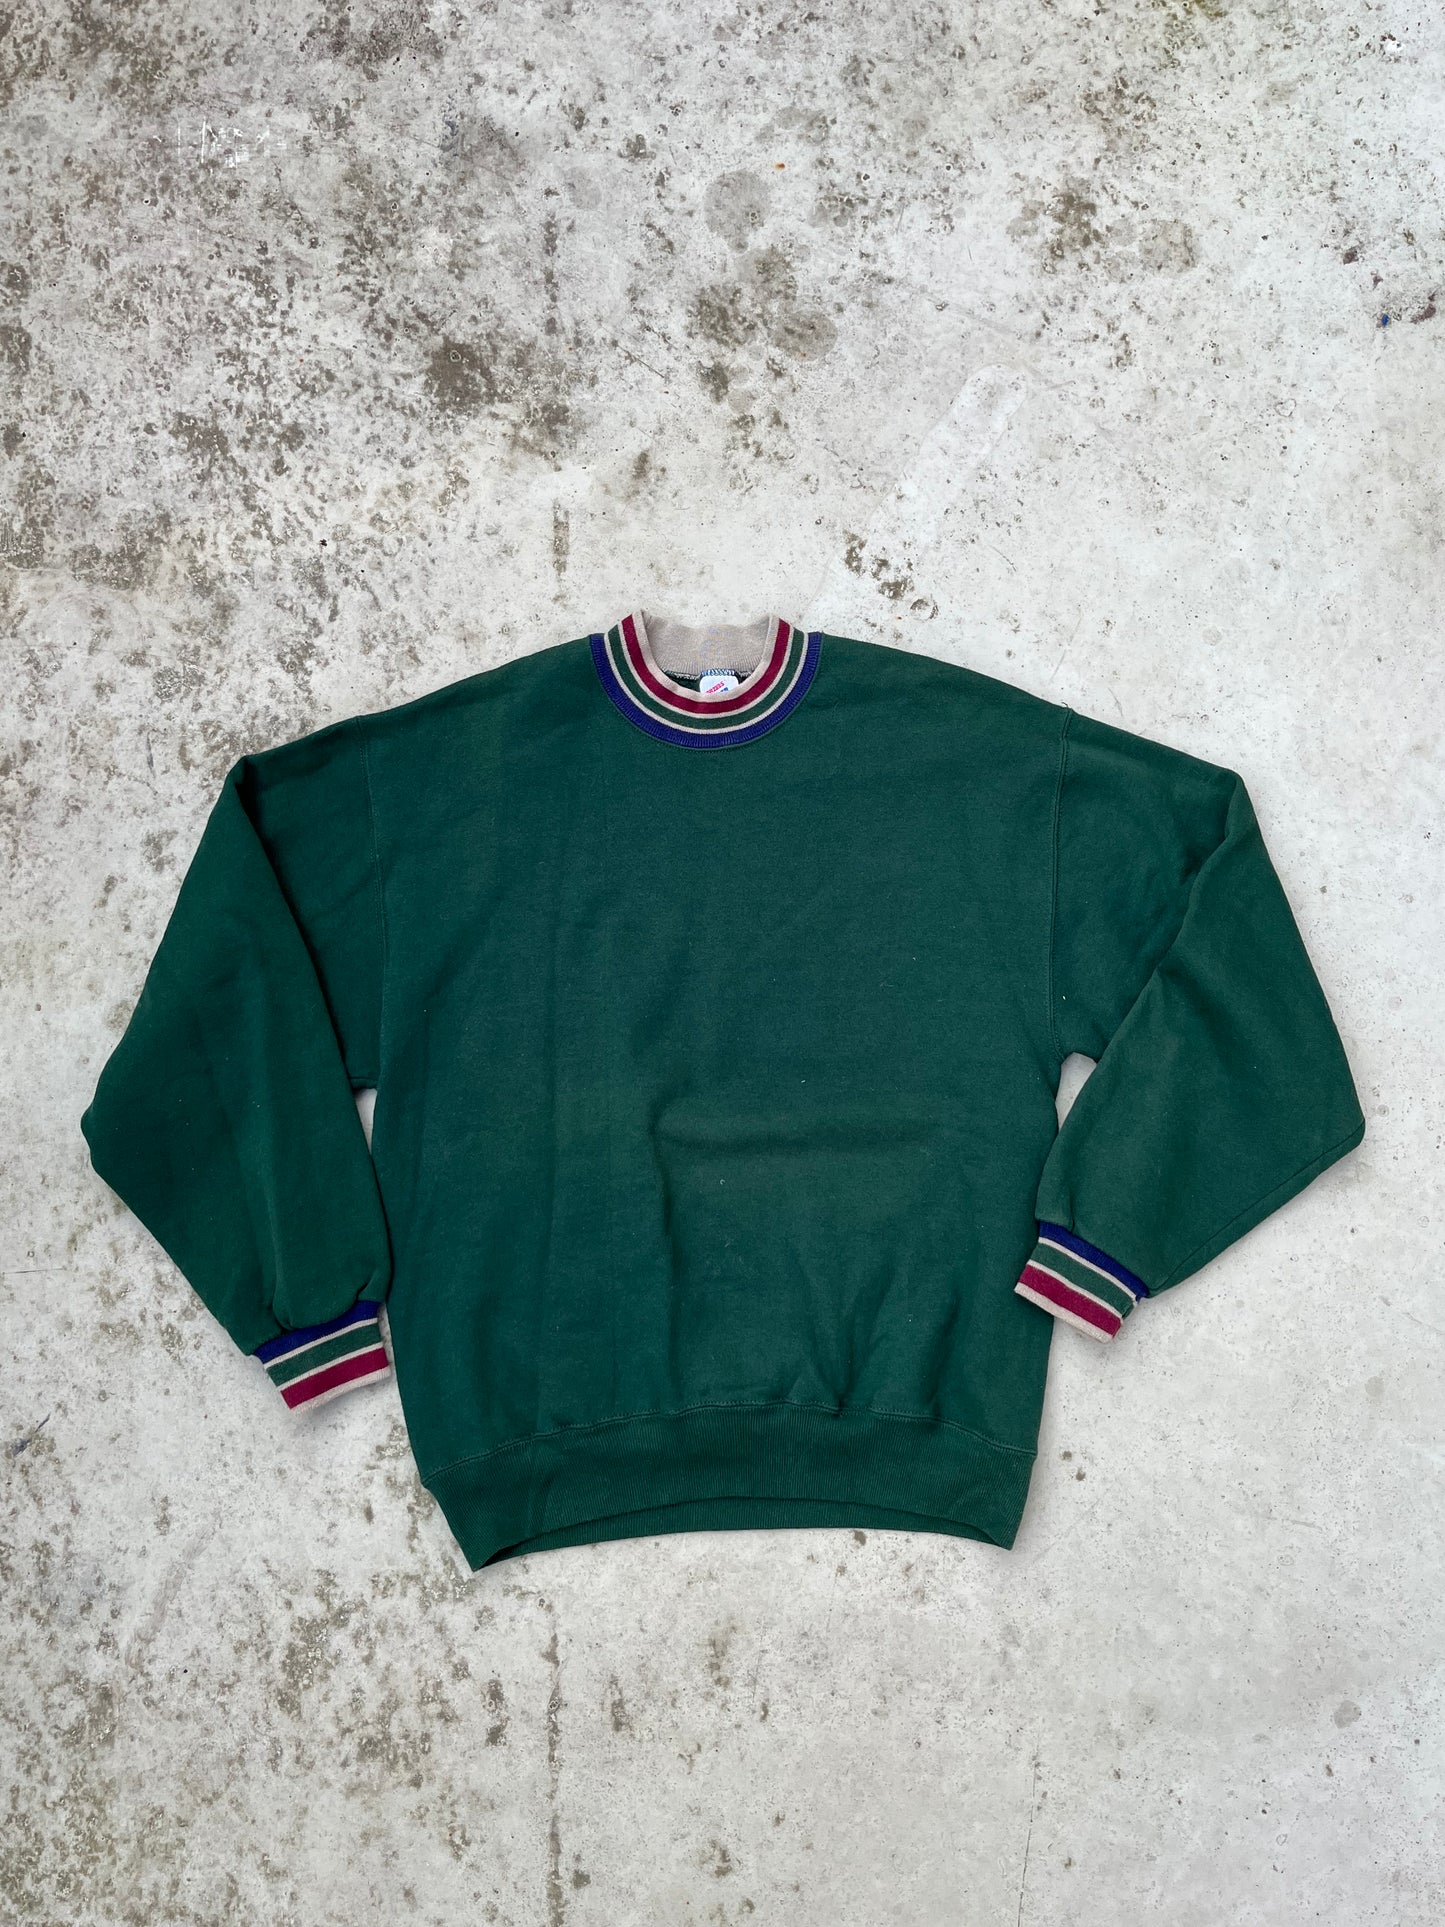 Vintage 90’s Sweatshirt